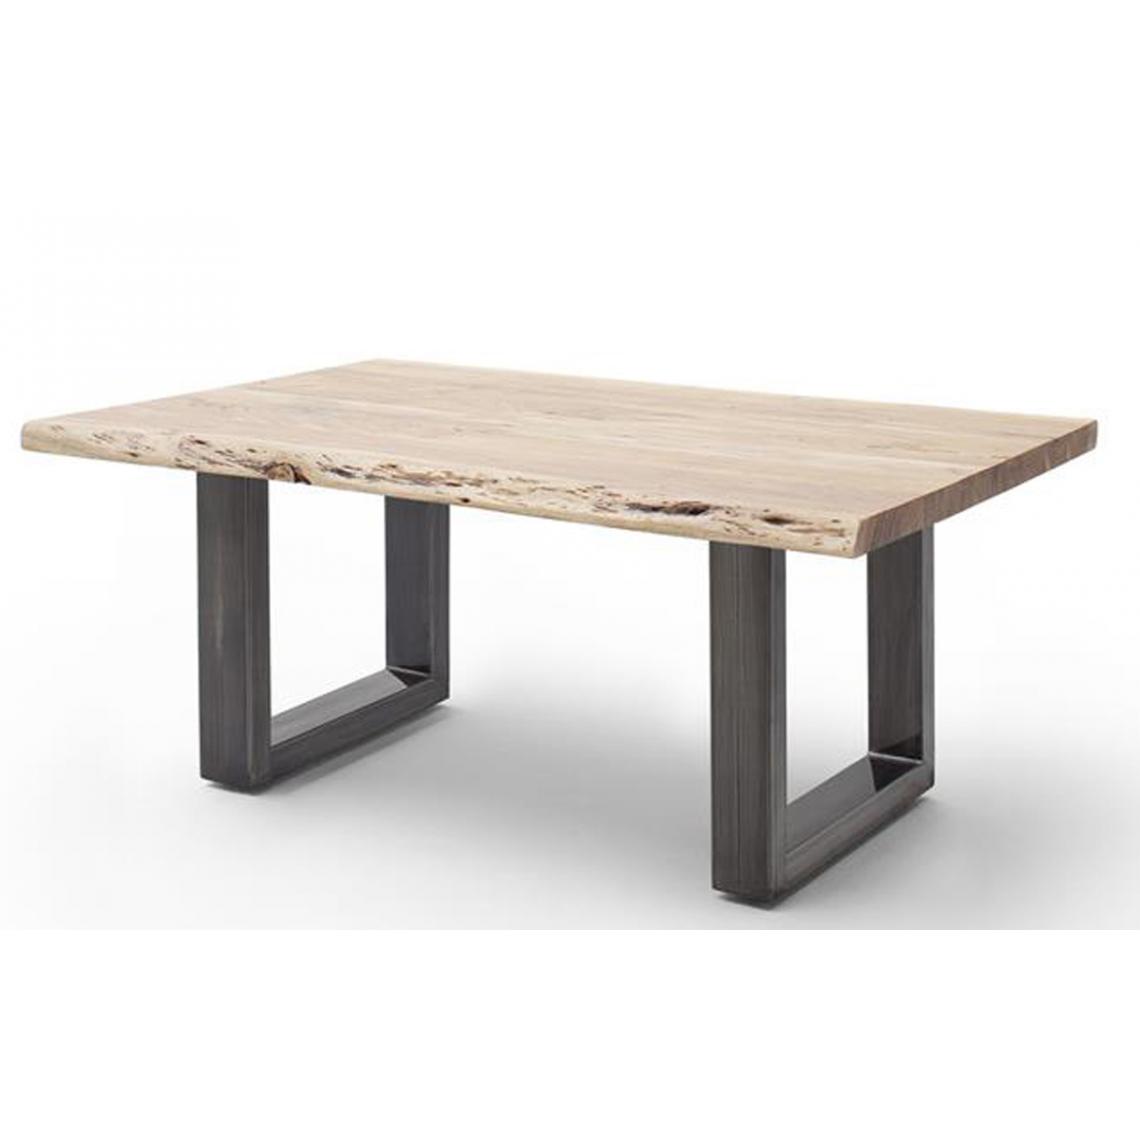 Pegane - Table basse en bois d'acacia massif naturel et acier inoxydable antique - L.110 x H.45 x P.70 cm - Tables basses